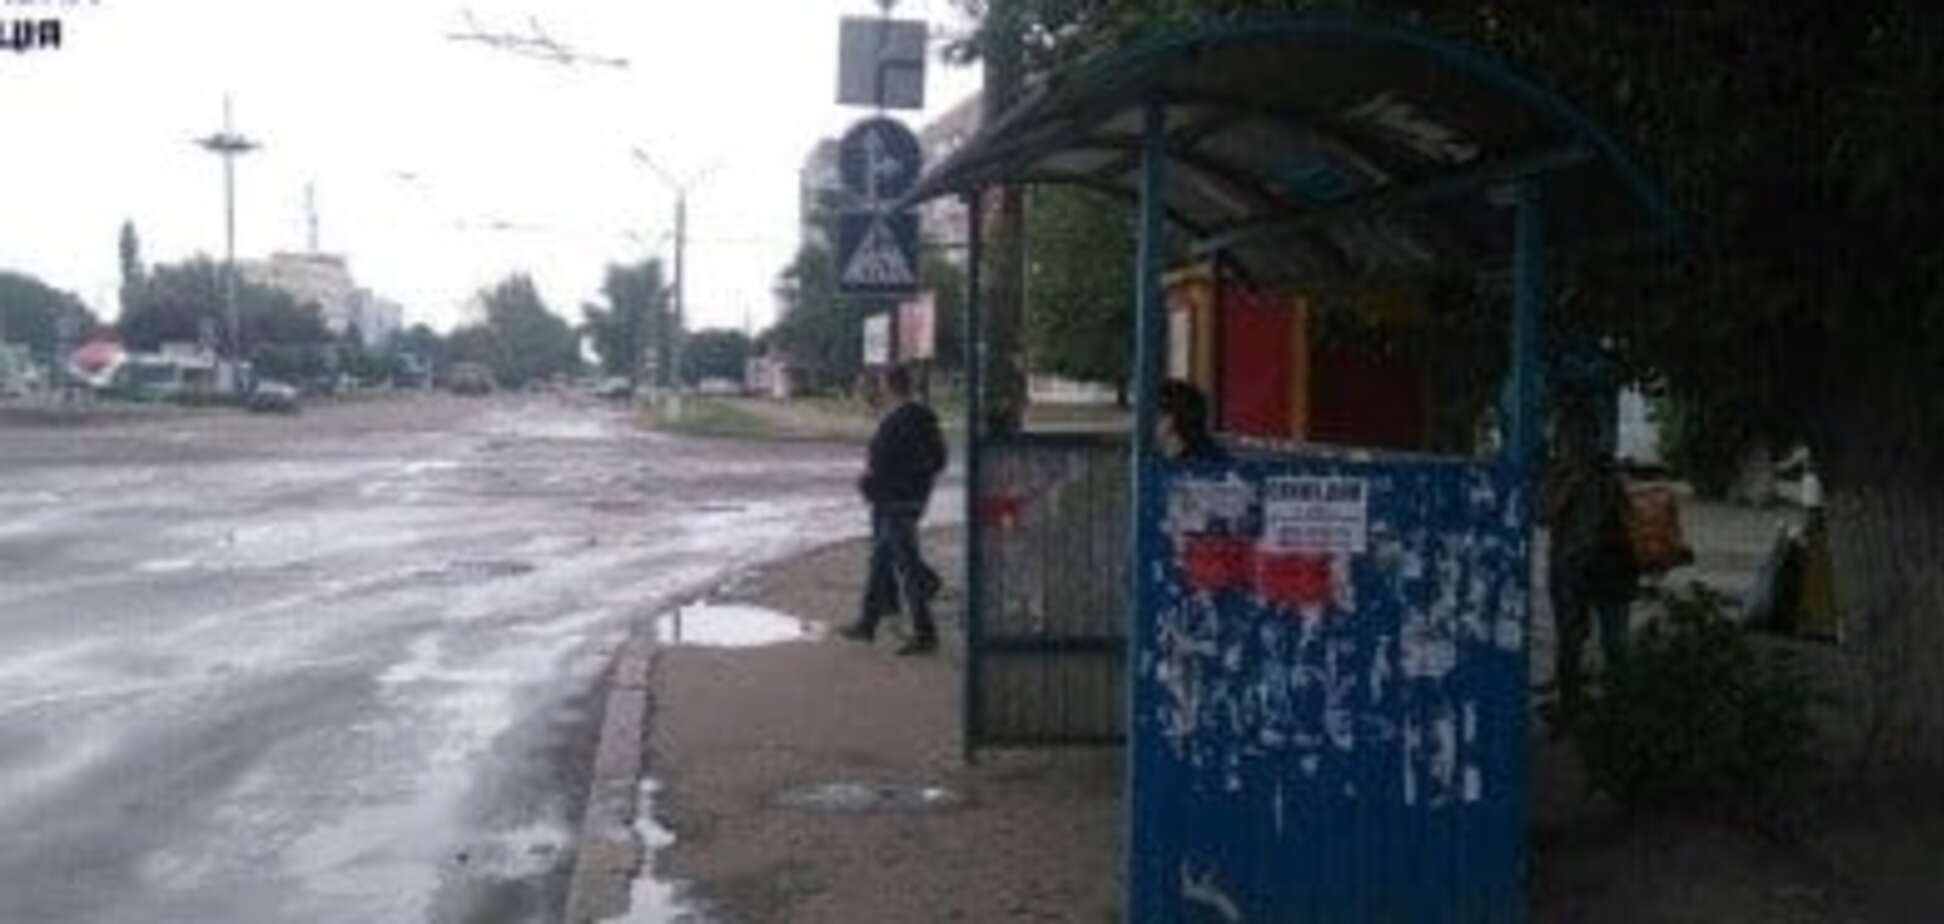 Николаевская полиция требует демонтировать остановку на ЖД вокзале